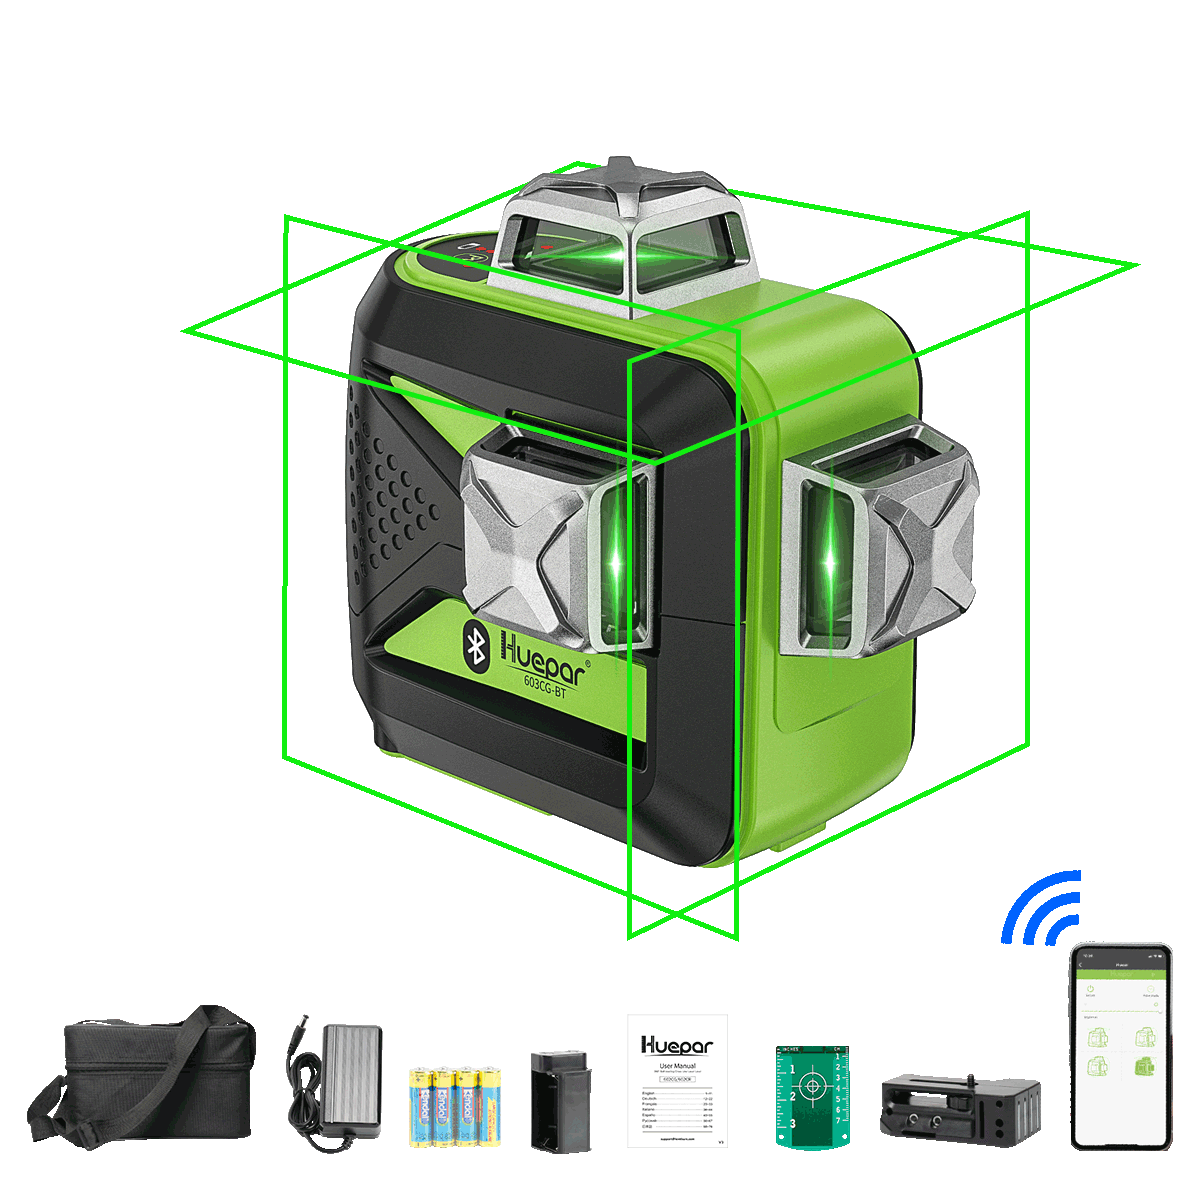 Huepar 603CG-BT - Nivel láser 3D con haz verde de 3 x 360° y conectividad Bluetooth